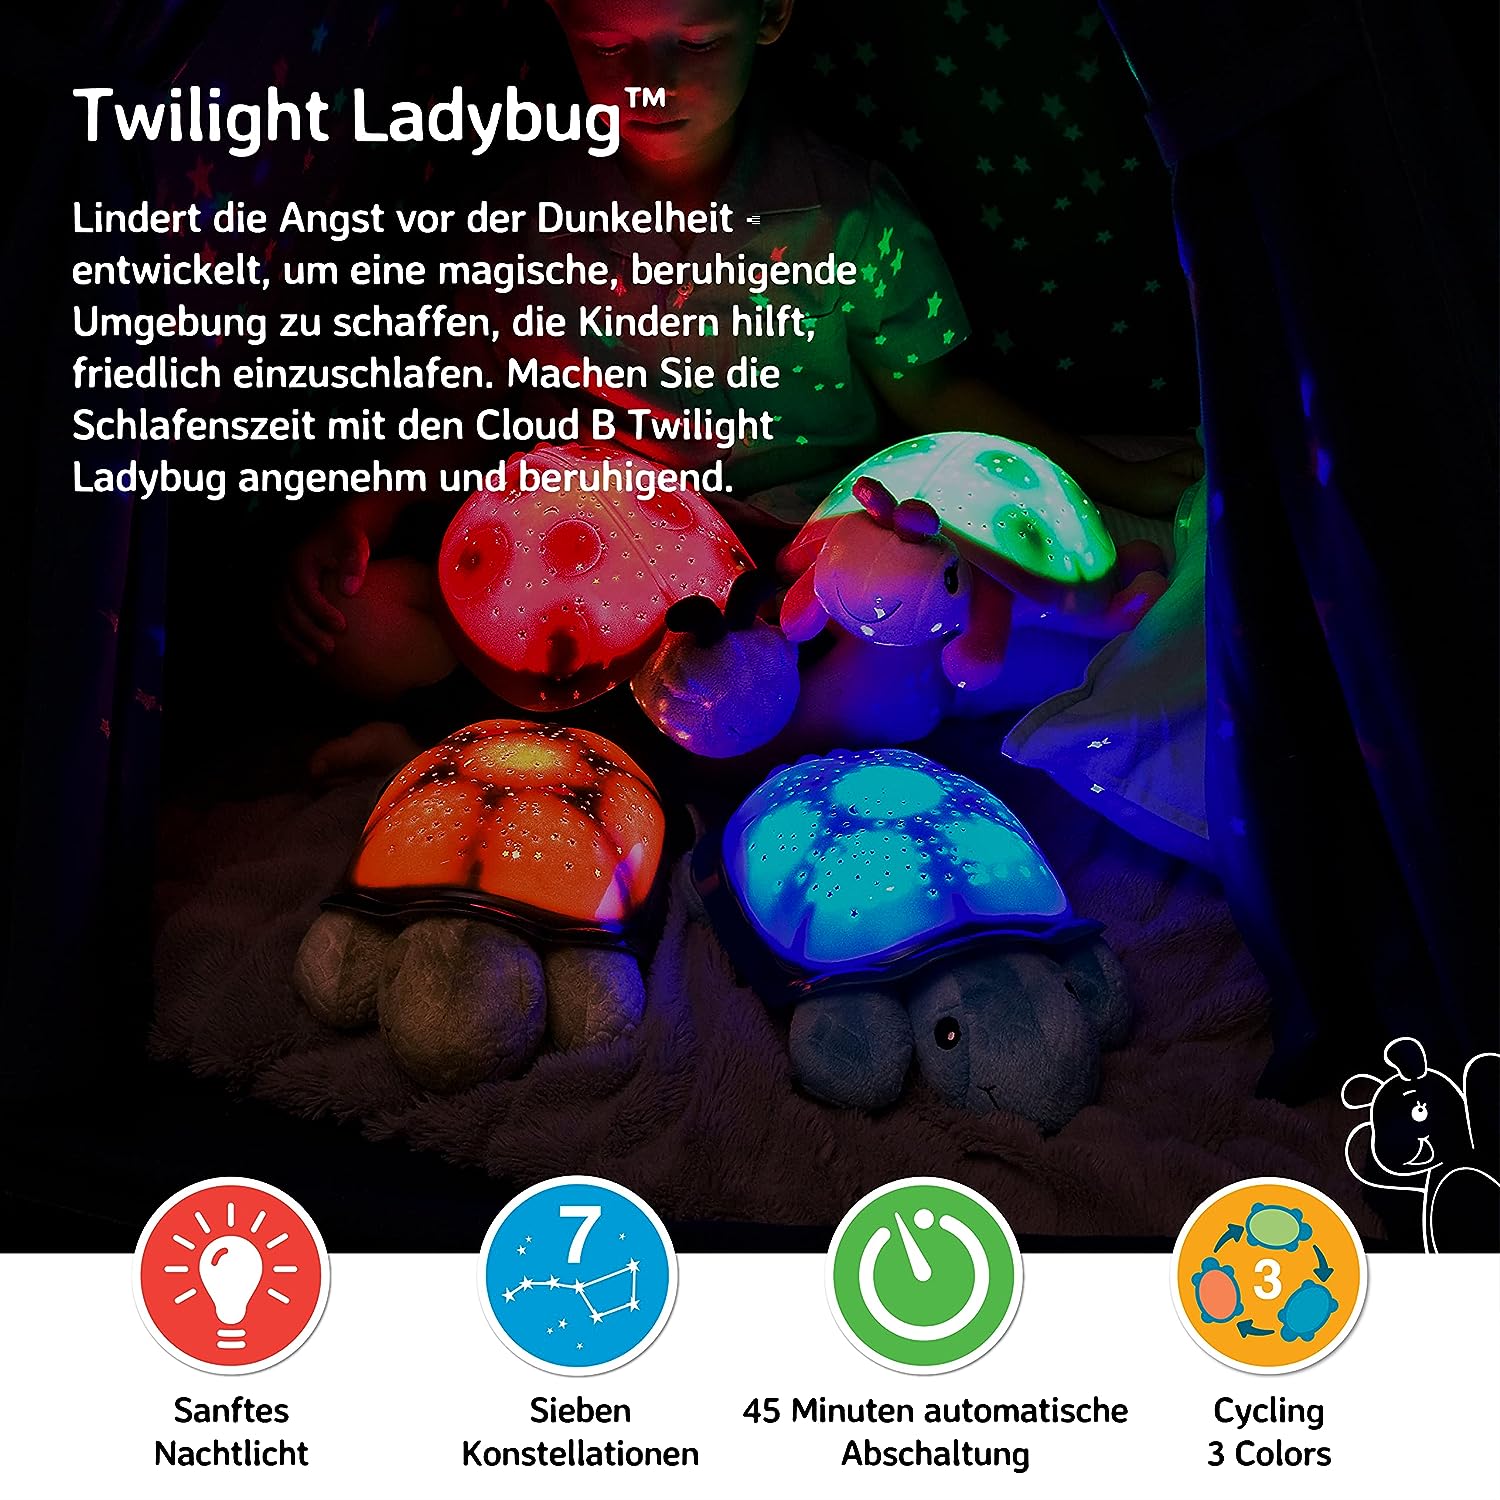 Twilight-Ladybug-Nachtlicht-kaefer-berlindeluxe-rot-schwarz-marienkaefer-leuchte